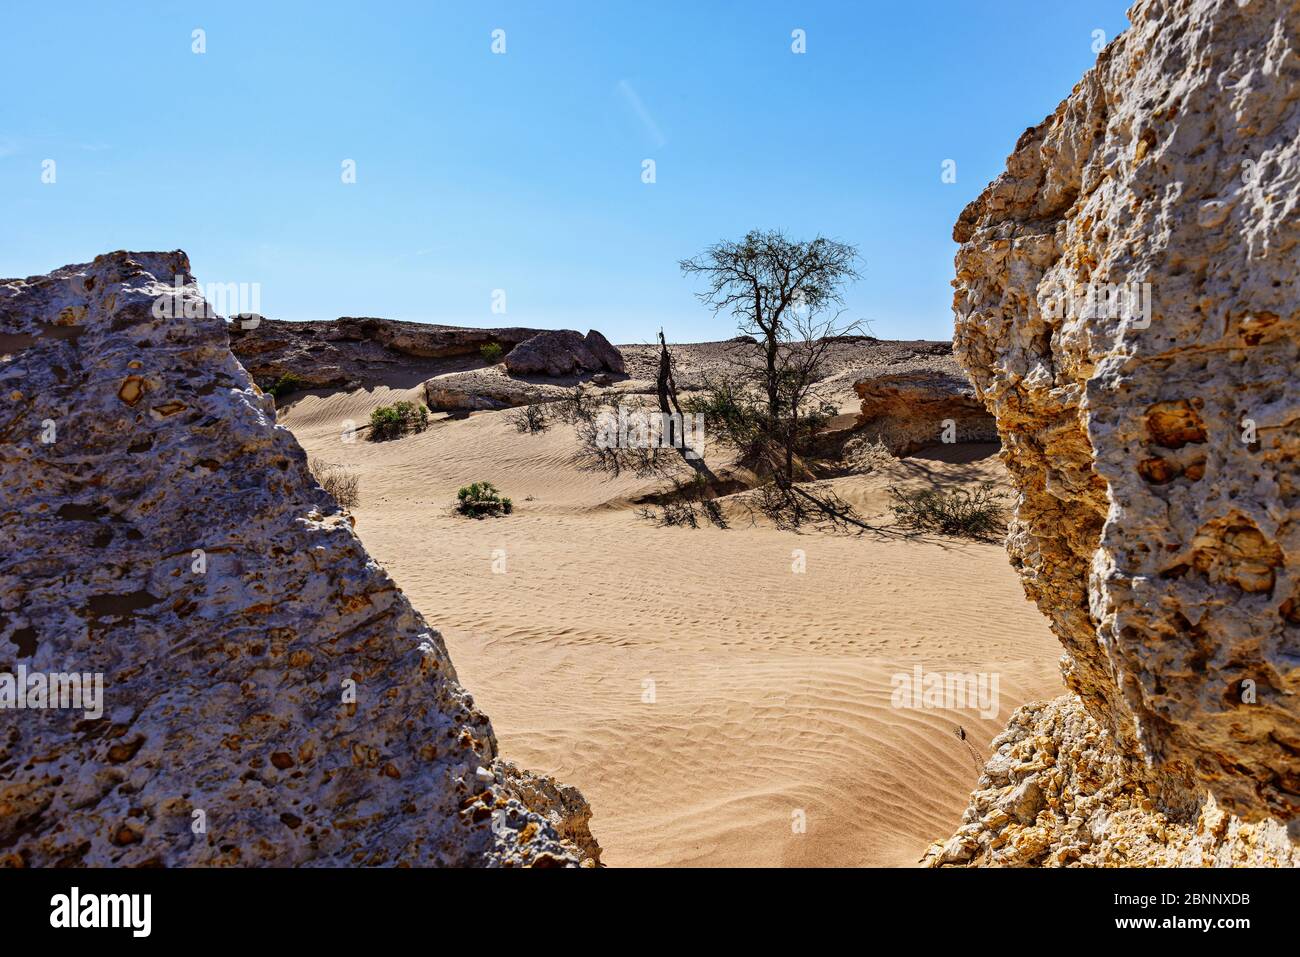 Déserts, sable, dunes, rochers, bords rocailleux, bords sécessionnistes, arbustes, arbres, lumière du midi Banque D'Images